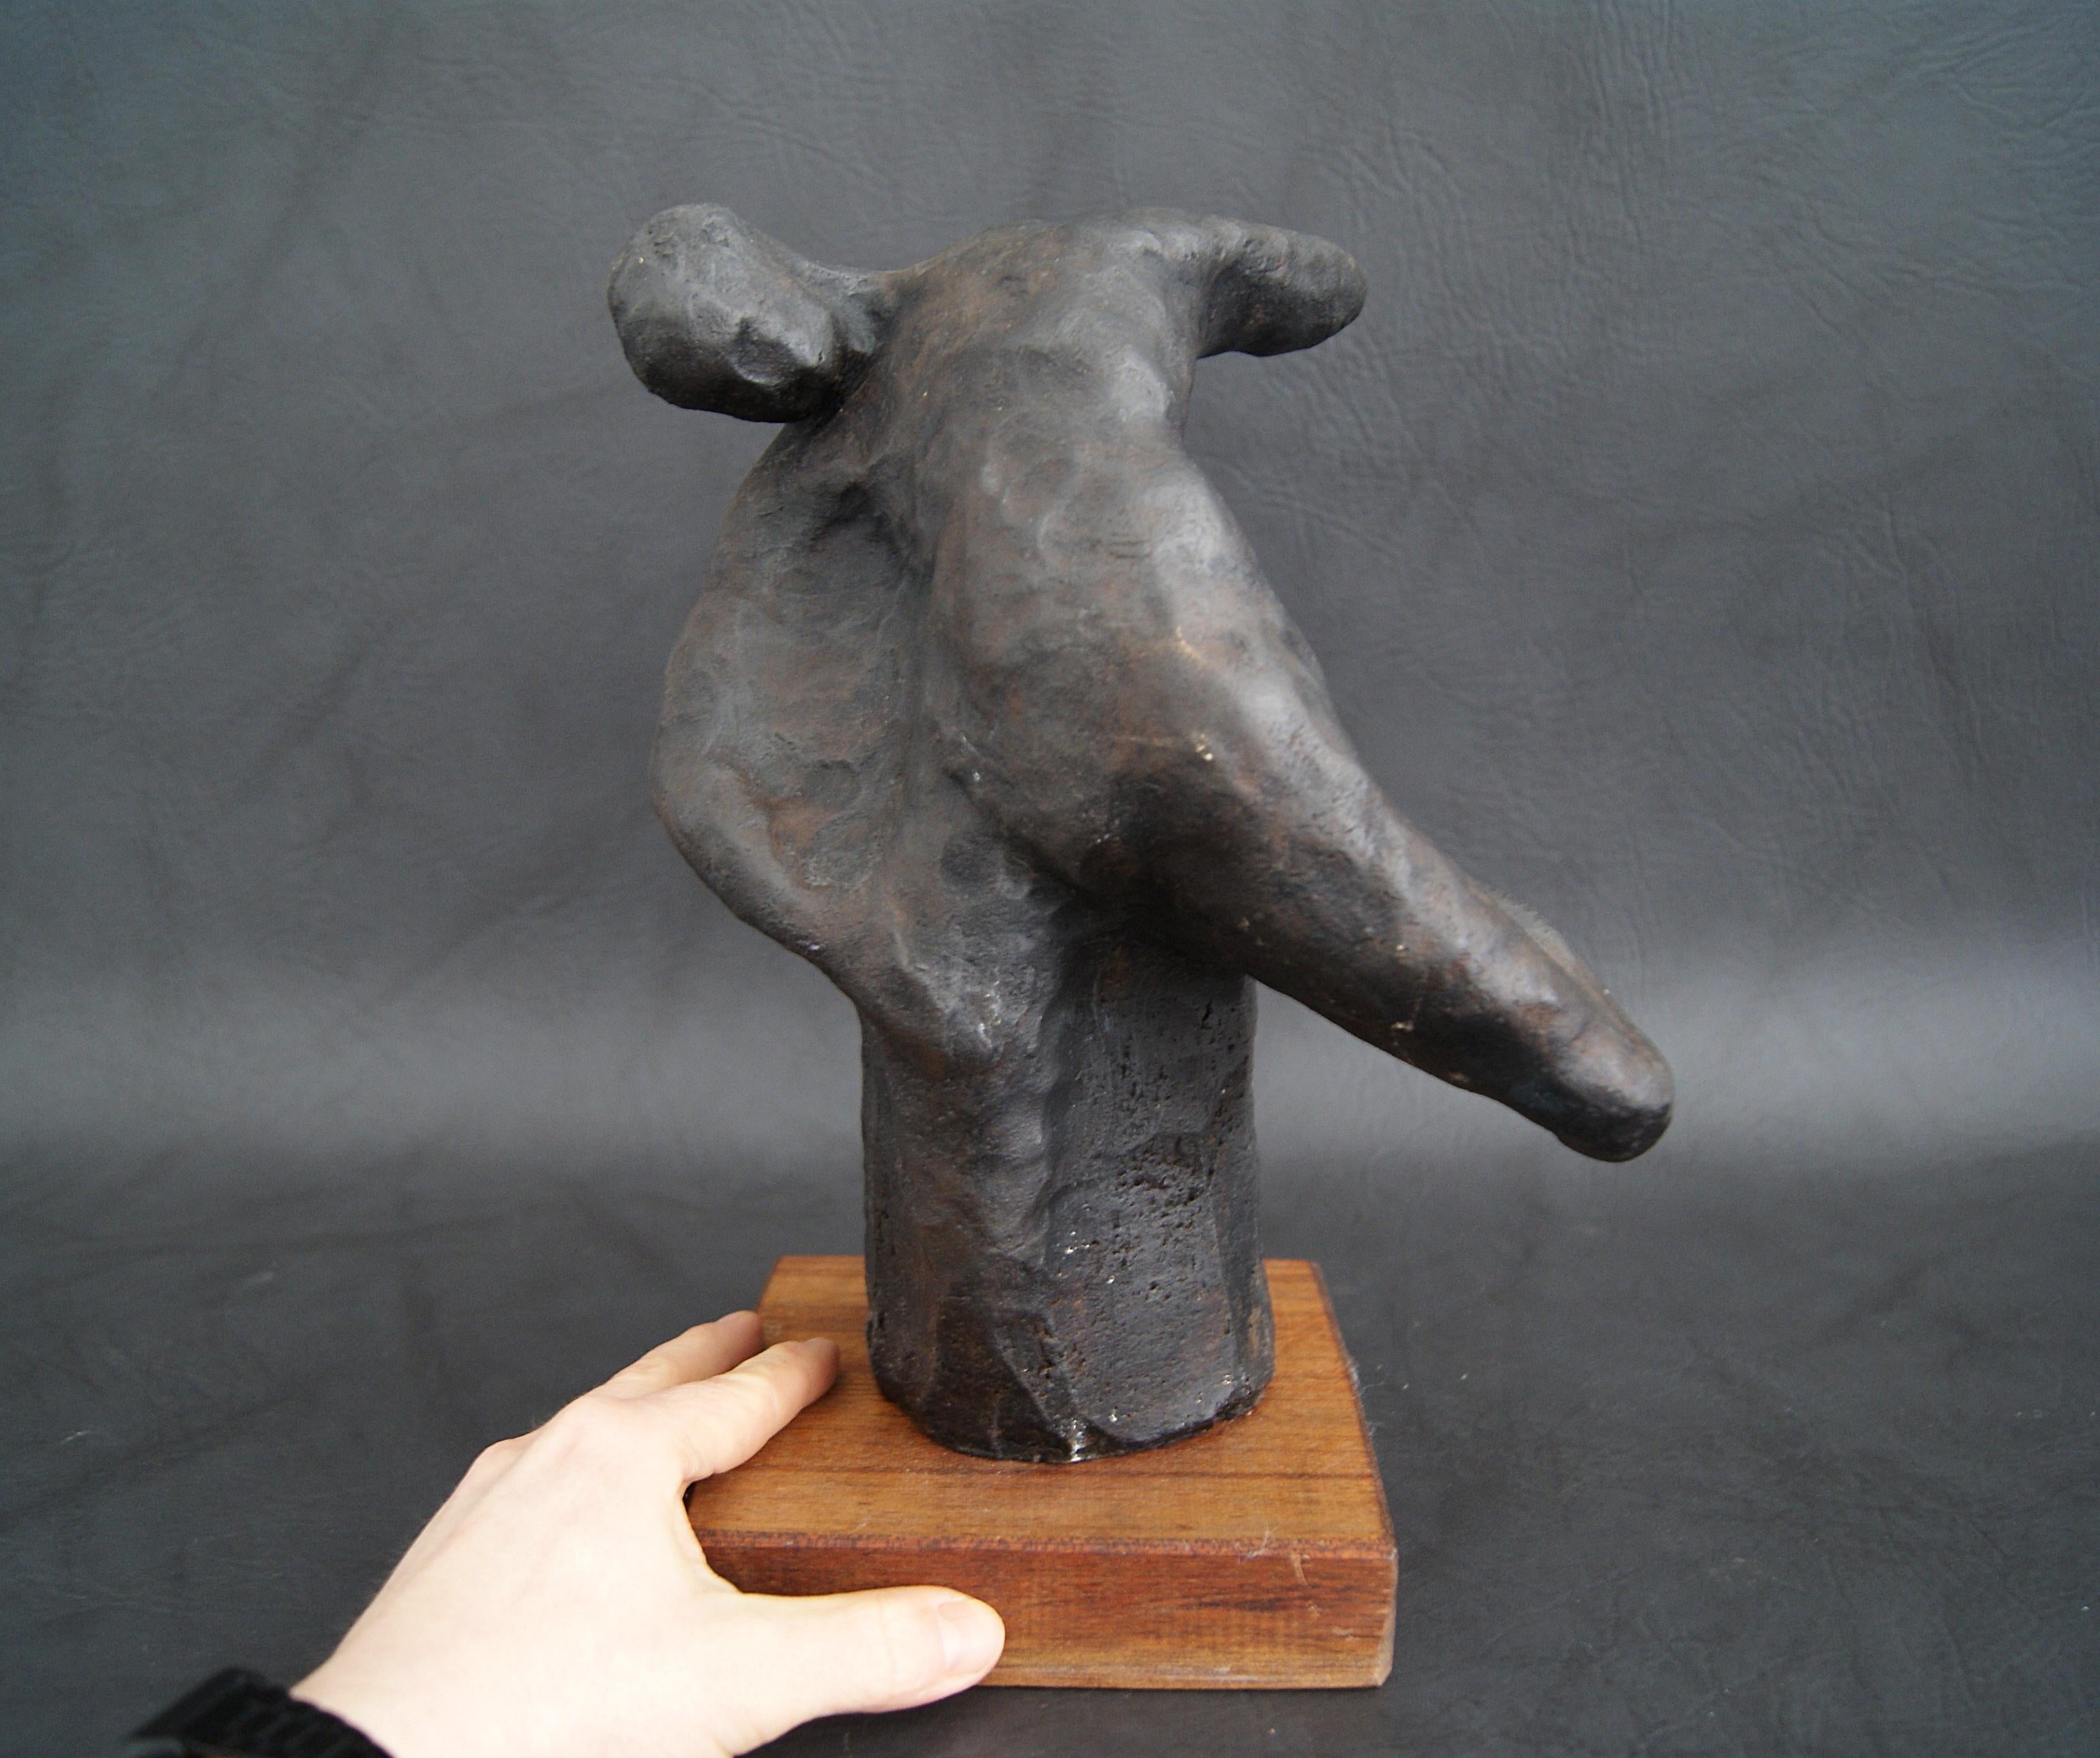 Handgeformte Skulptur aus Gips mit patinierter Bronze auf einem Holzsockel. Die Gipsfigur stammt von dem deutschen Künstler TADÄUS aus der Serie formlose Körperformen von 2002. Ein sehr dekoratives Einzelstück, das zur Interpretation einlädt. Die